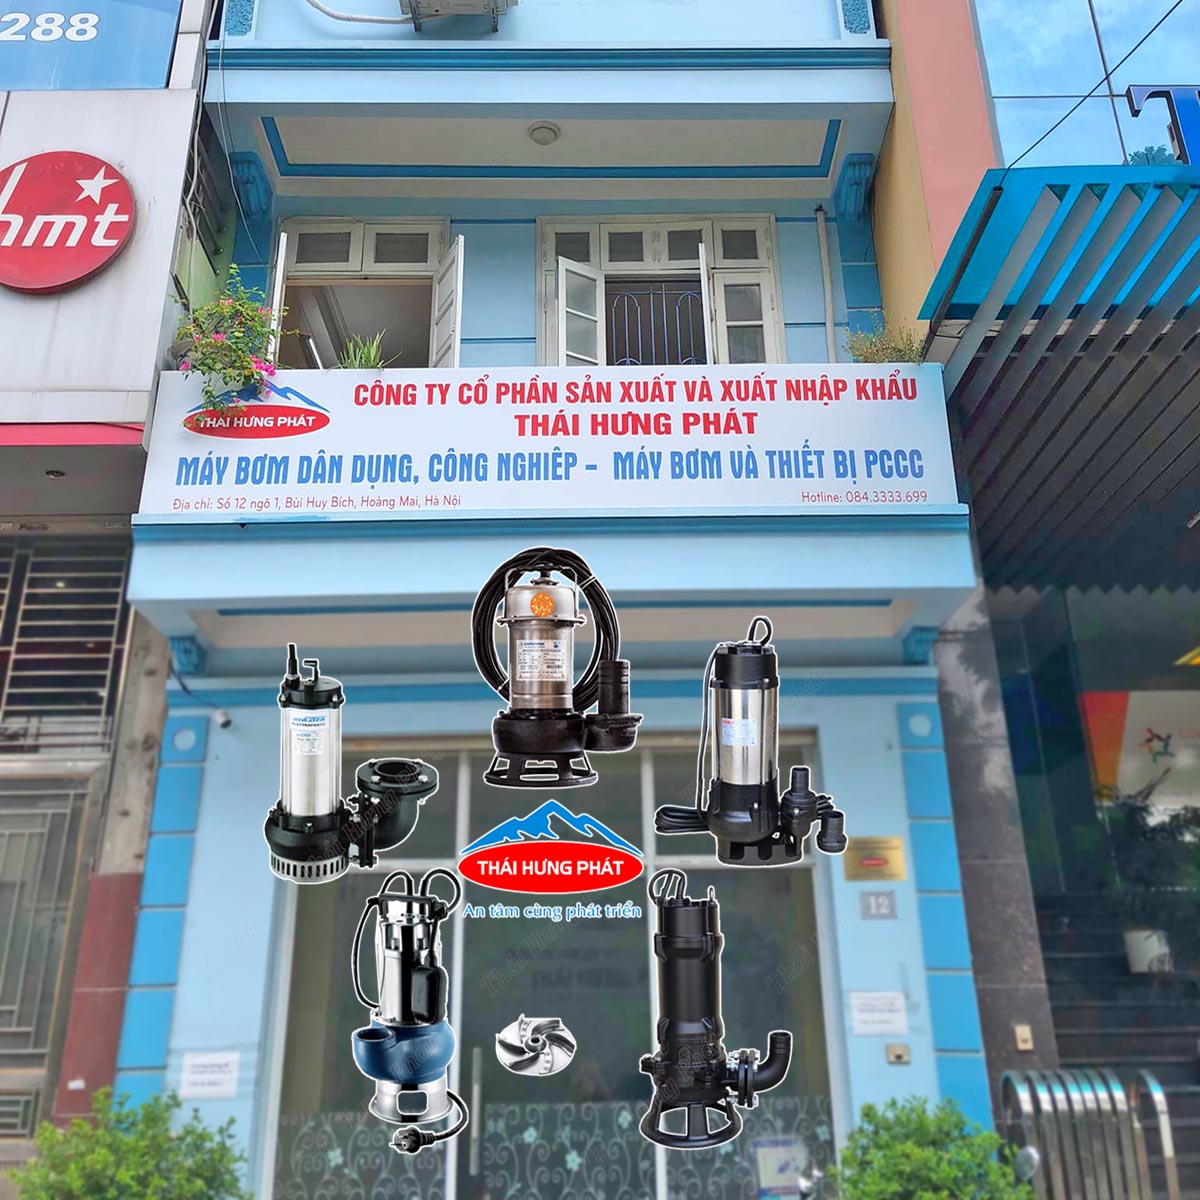 Giới thiệu về Nhà phân phối máy bơm nước thải Thái Hưng Phát